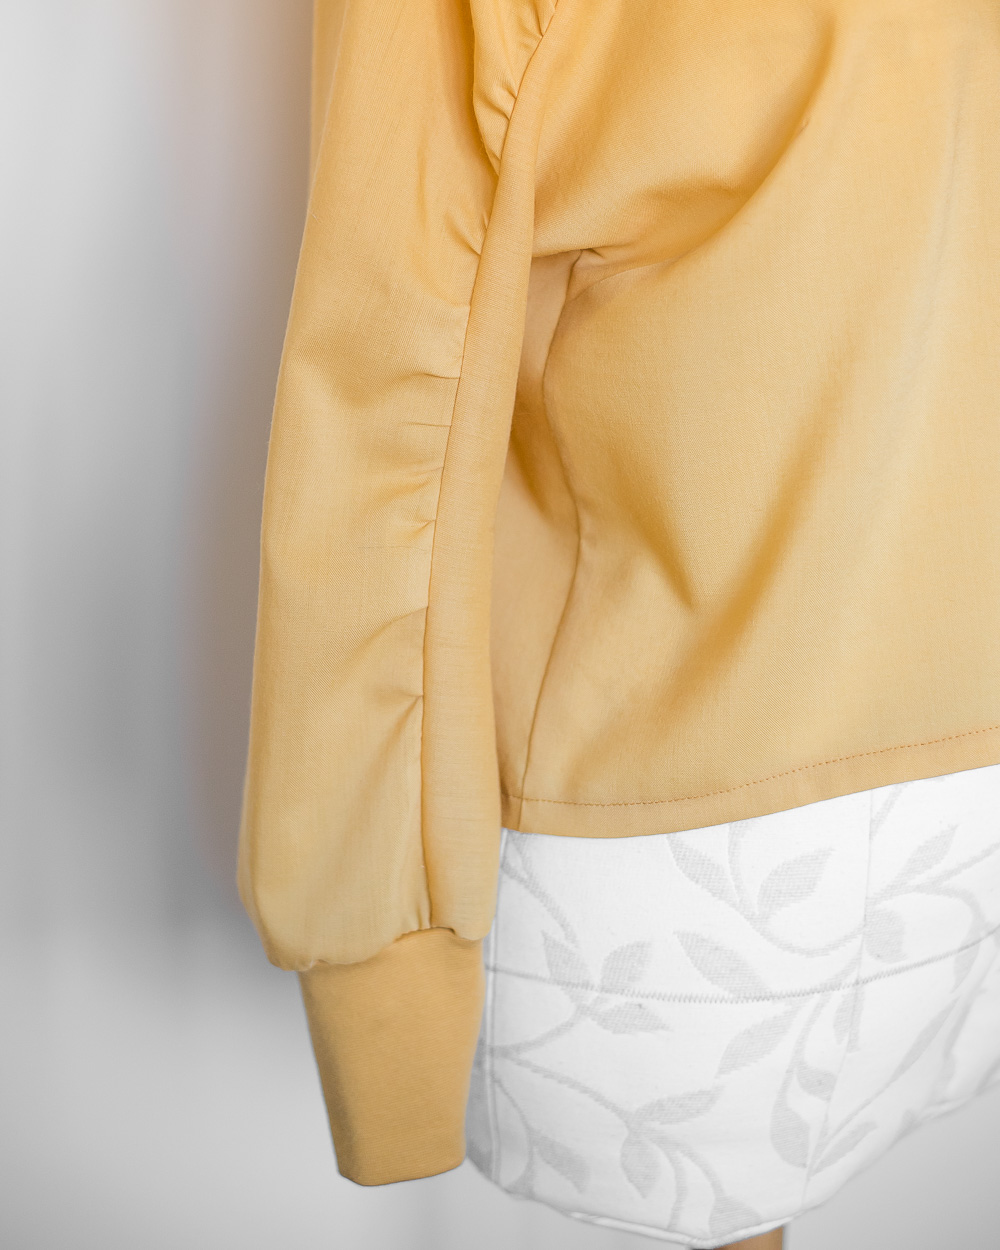 Fibre Mood Harper blouse added cuff detail
